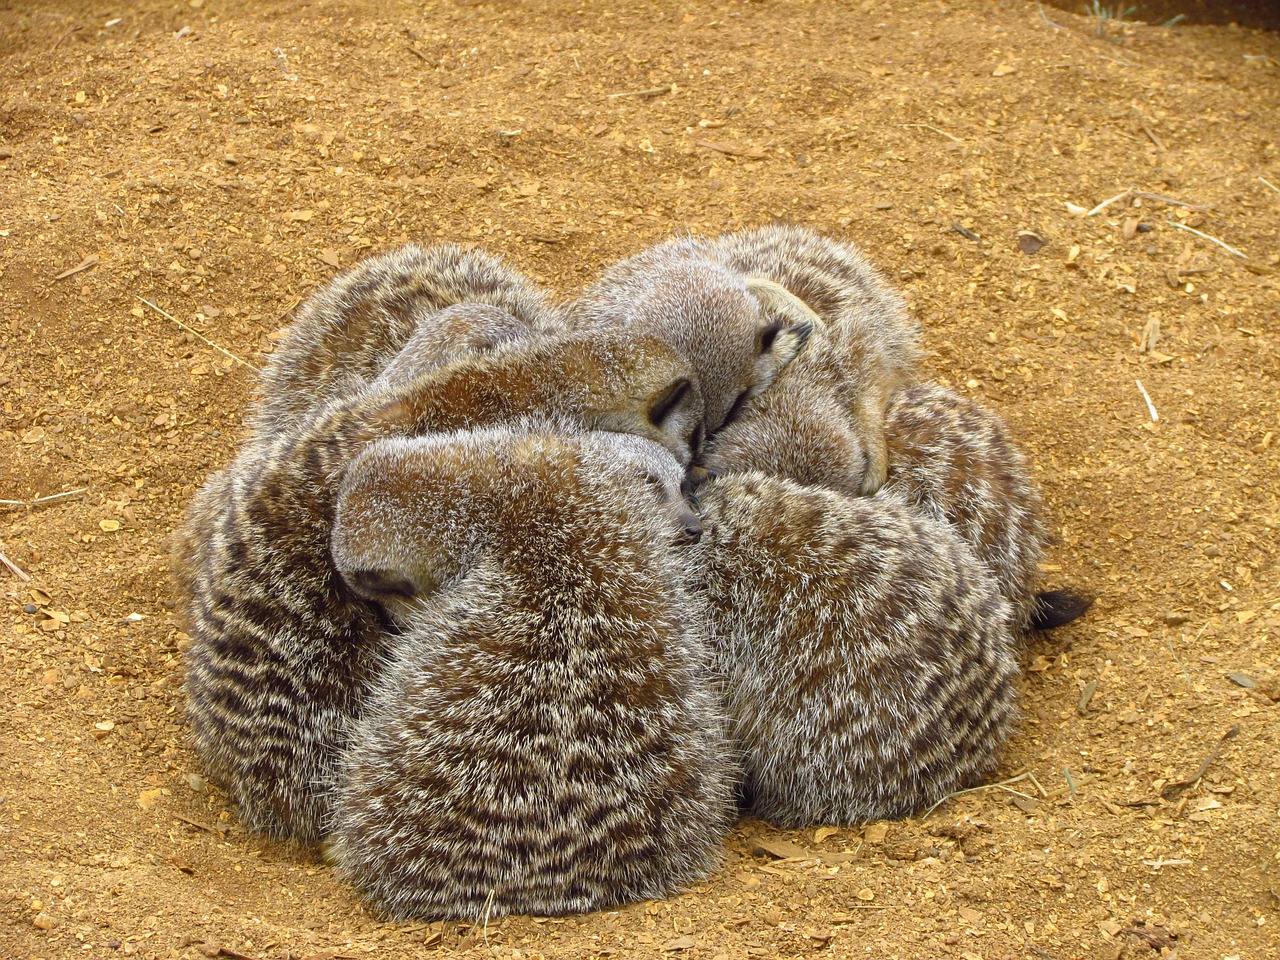 meerkat cuddle sand free photo